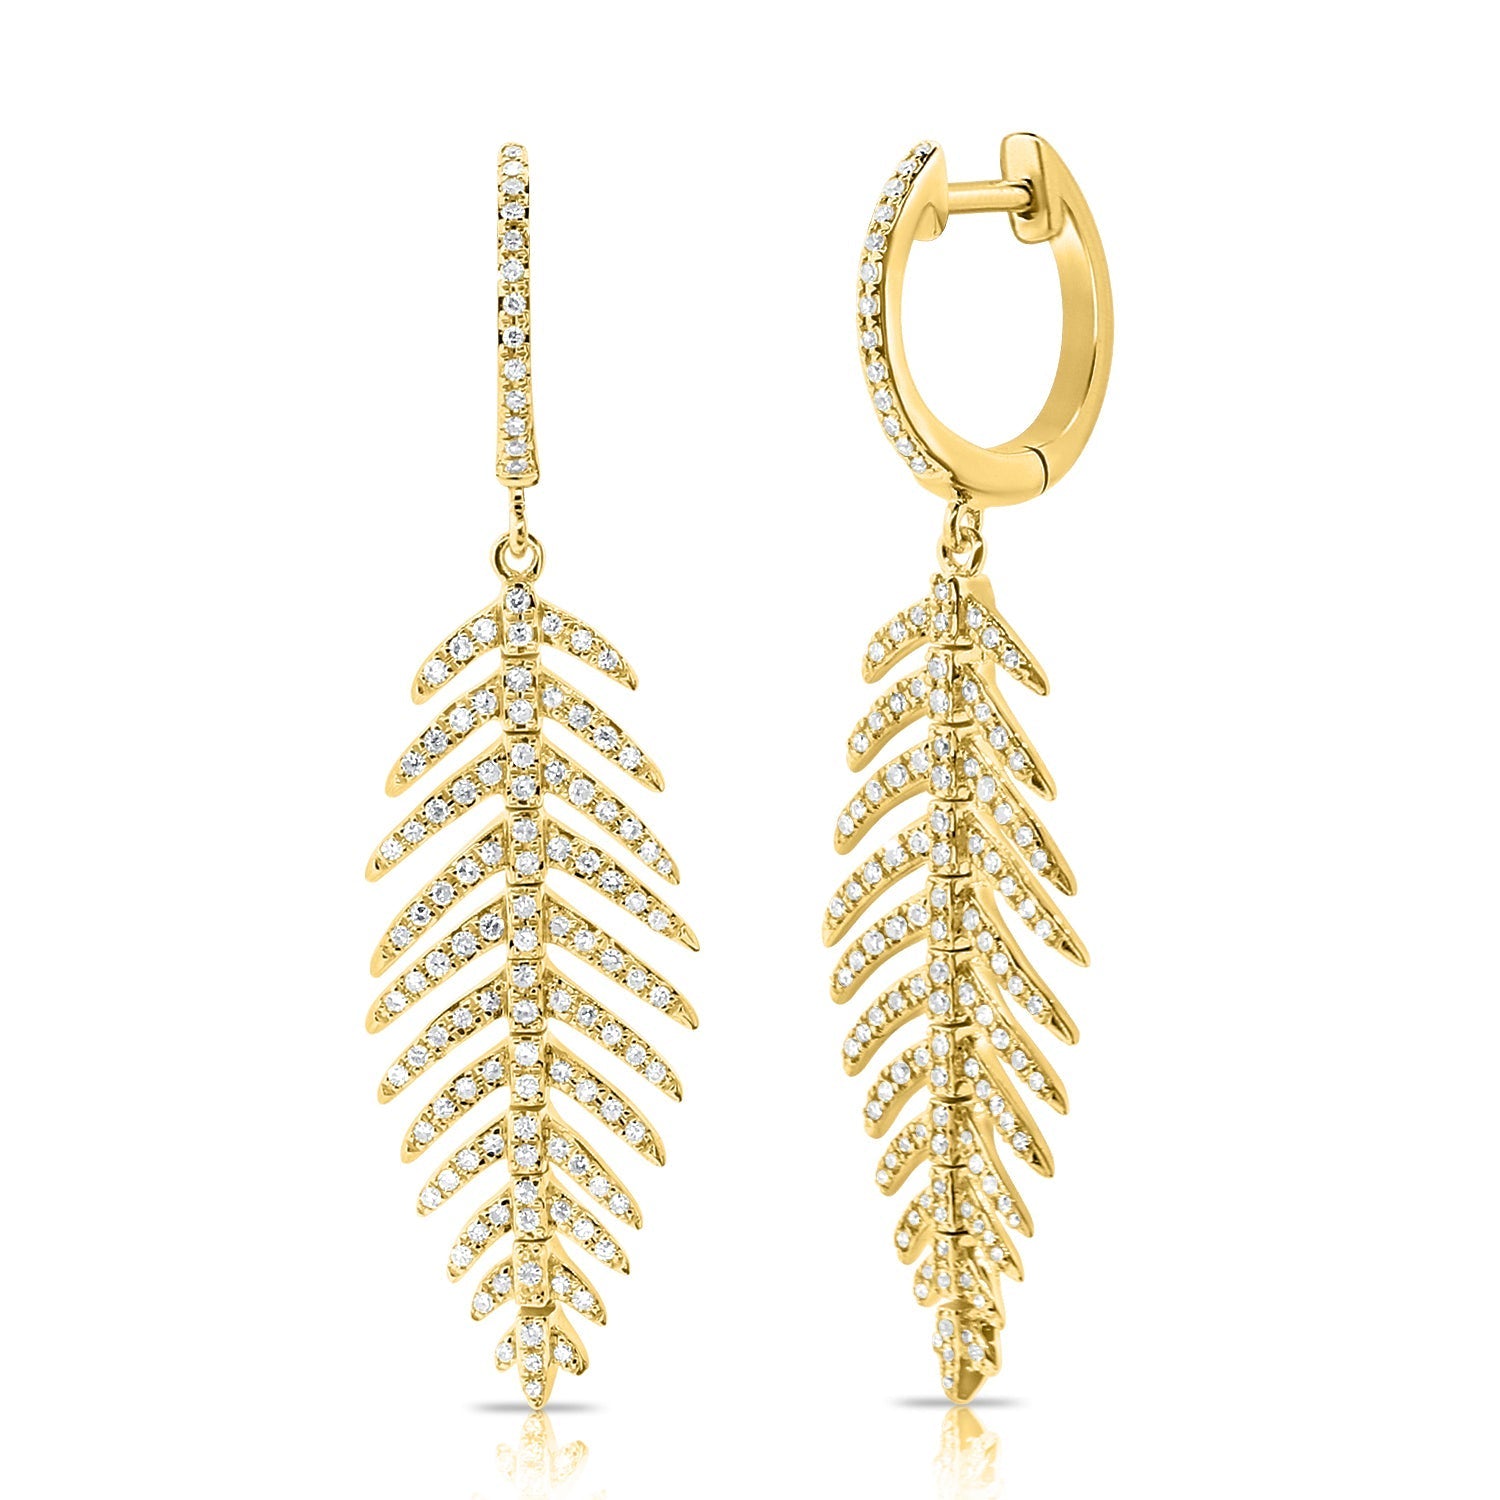 14K Gold & Diamond Feather Dangle Earrings